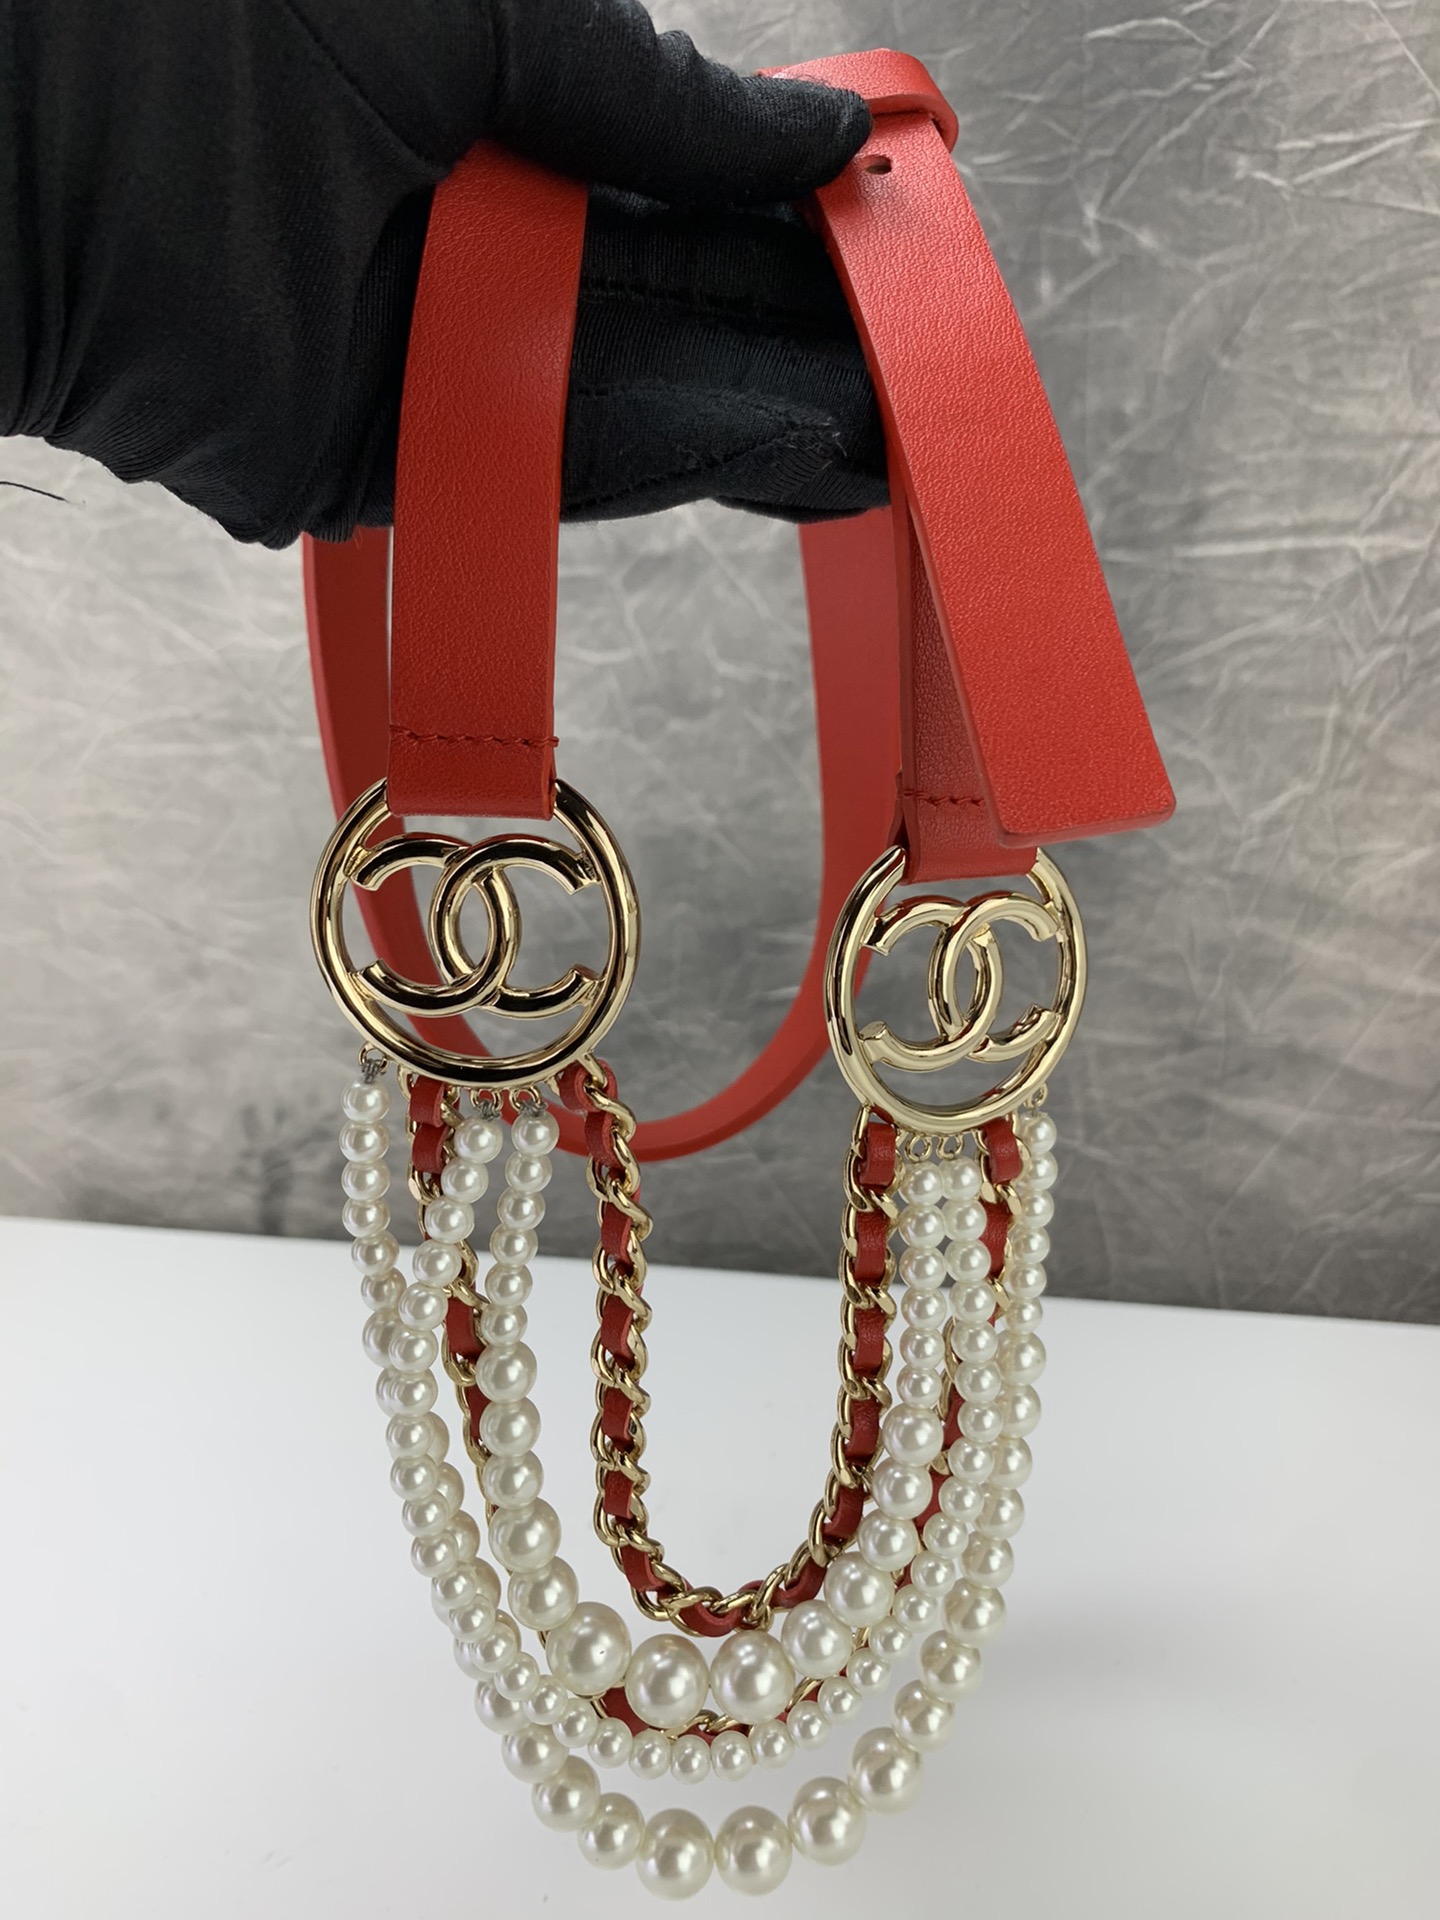 【￥530】小香家最新款 采用小牛皮 琉璃珍珠与金色金属标志完美结合 黑红2色 皮带宽度2.0cm码数 s-L长度可自己调节